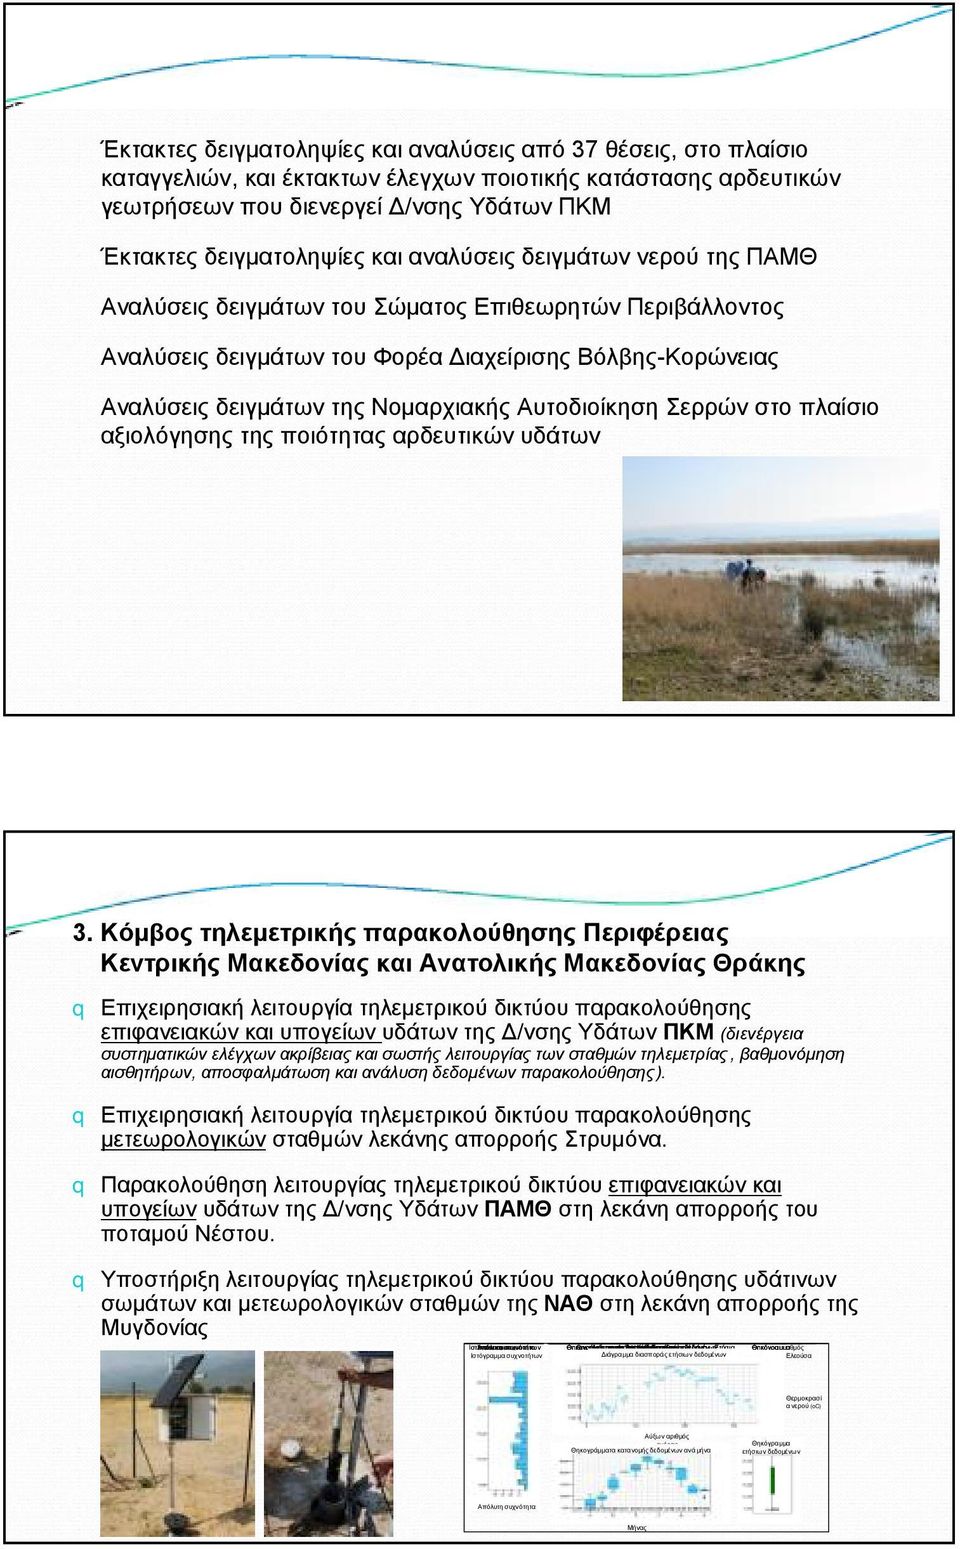 Αυτοδιοίκηση Σερρών στο πλαίσιο αξιολόγησης της ποιότητας αρδευτικών υδάτων 3.